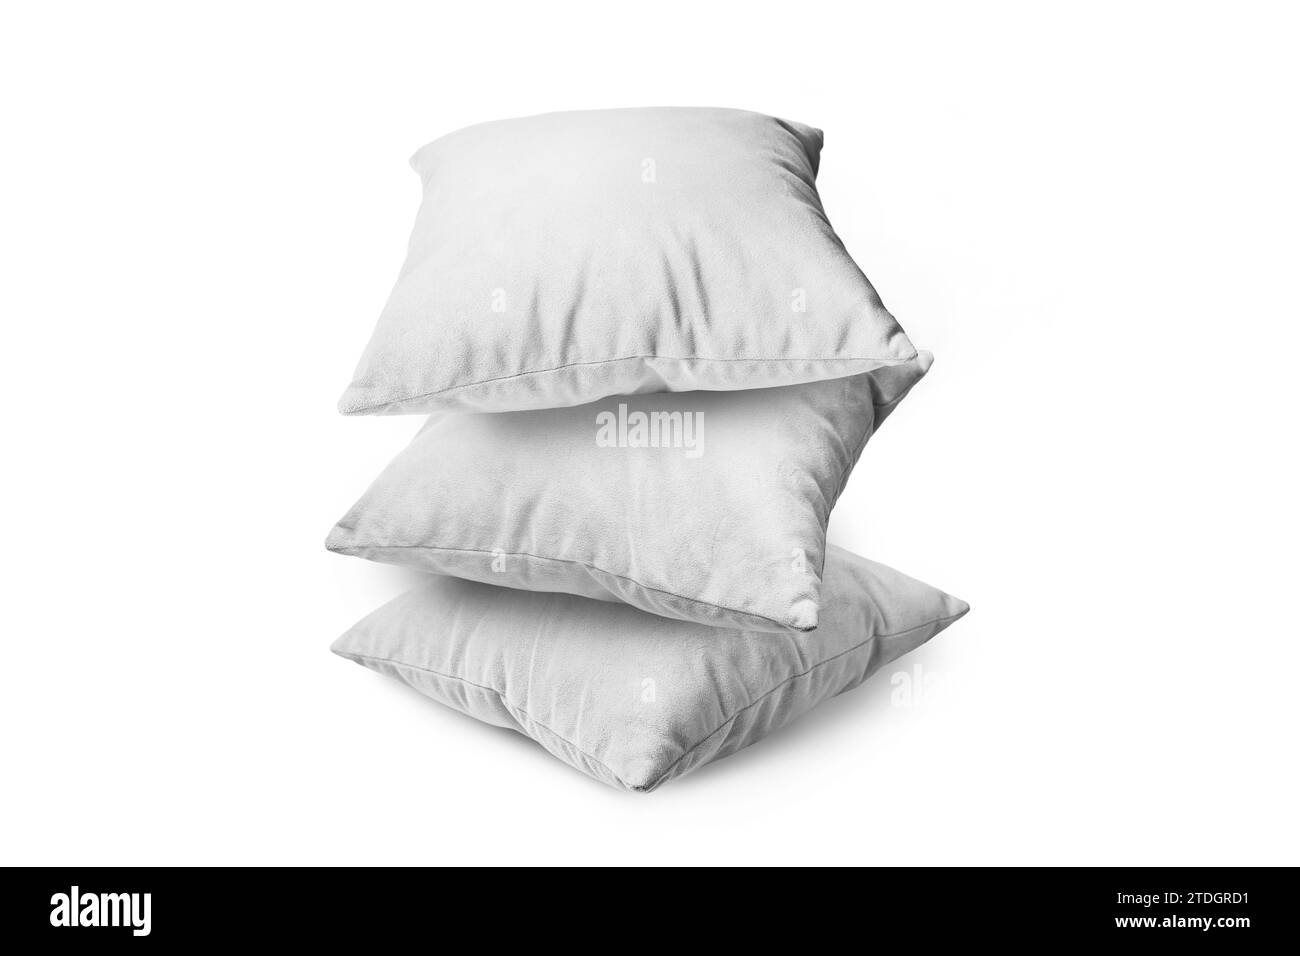 Pila di cuscini bianchi isolati su sfondo bianco. Pila di cuscini decorativi per dormire e riposare, interni domestici, arredamento della casa. Foto Stock